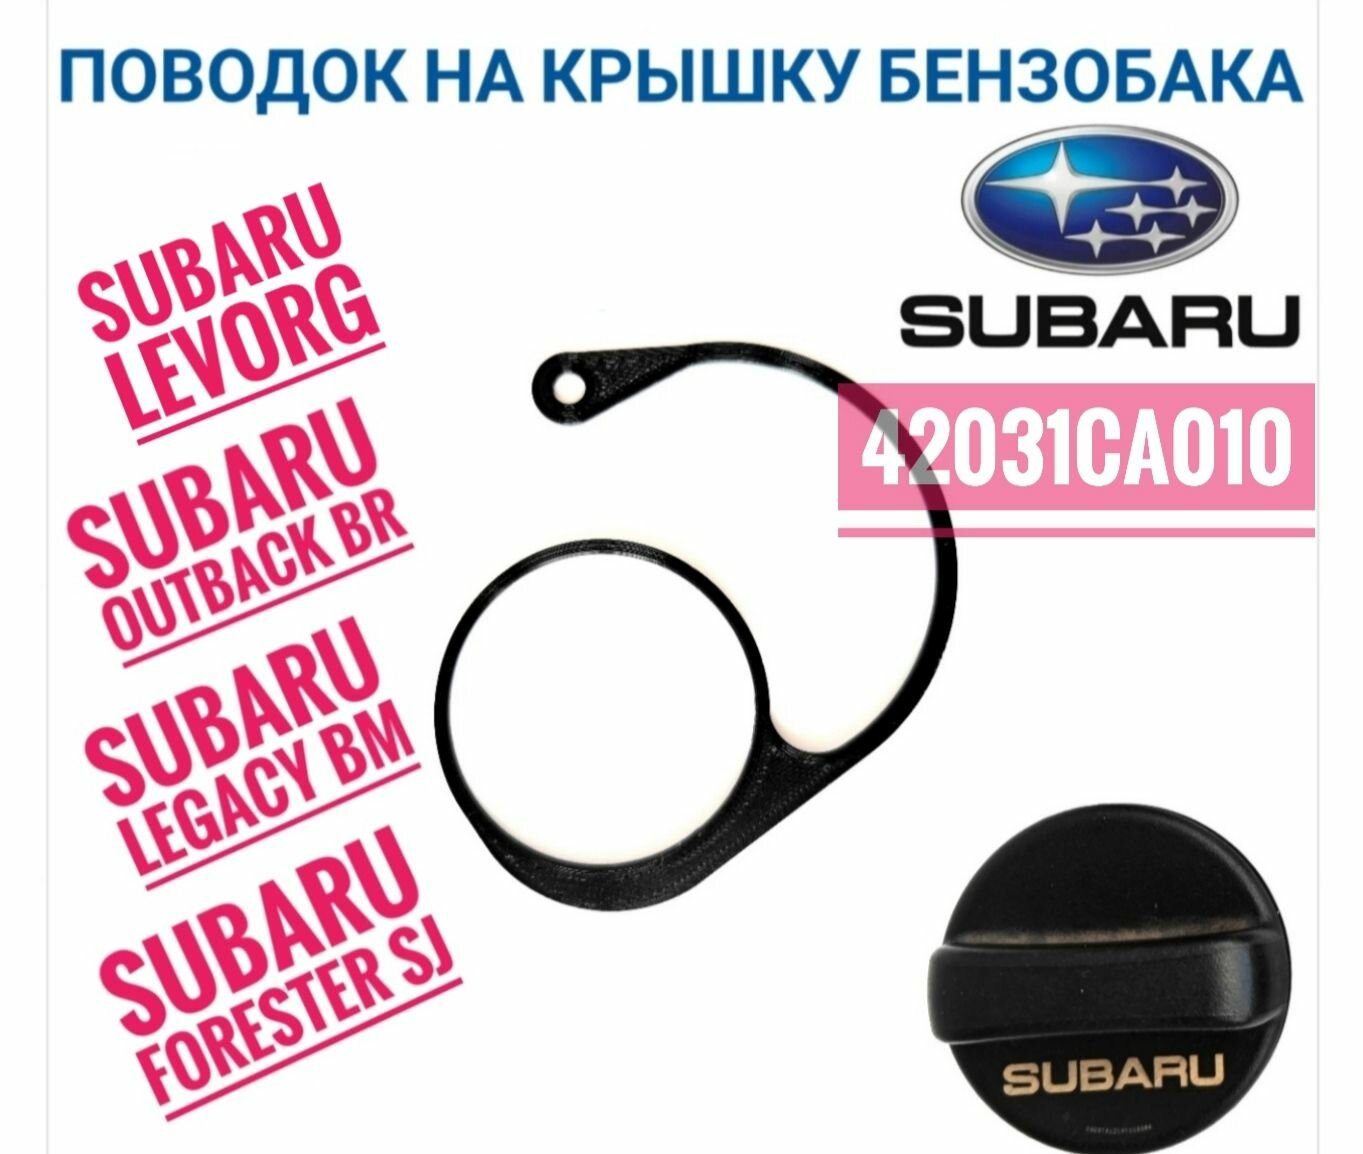 Держатель - поводок для крышки бензобака Subaru 42031СА010